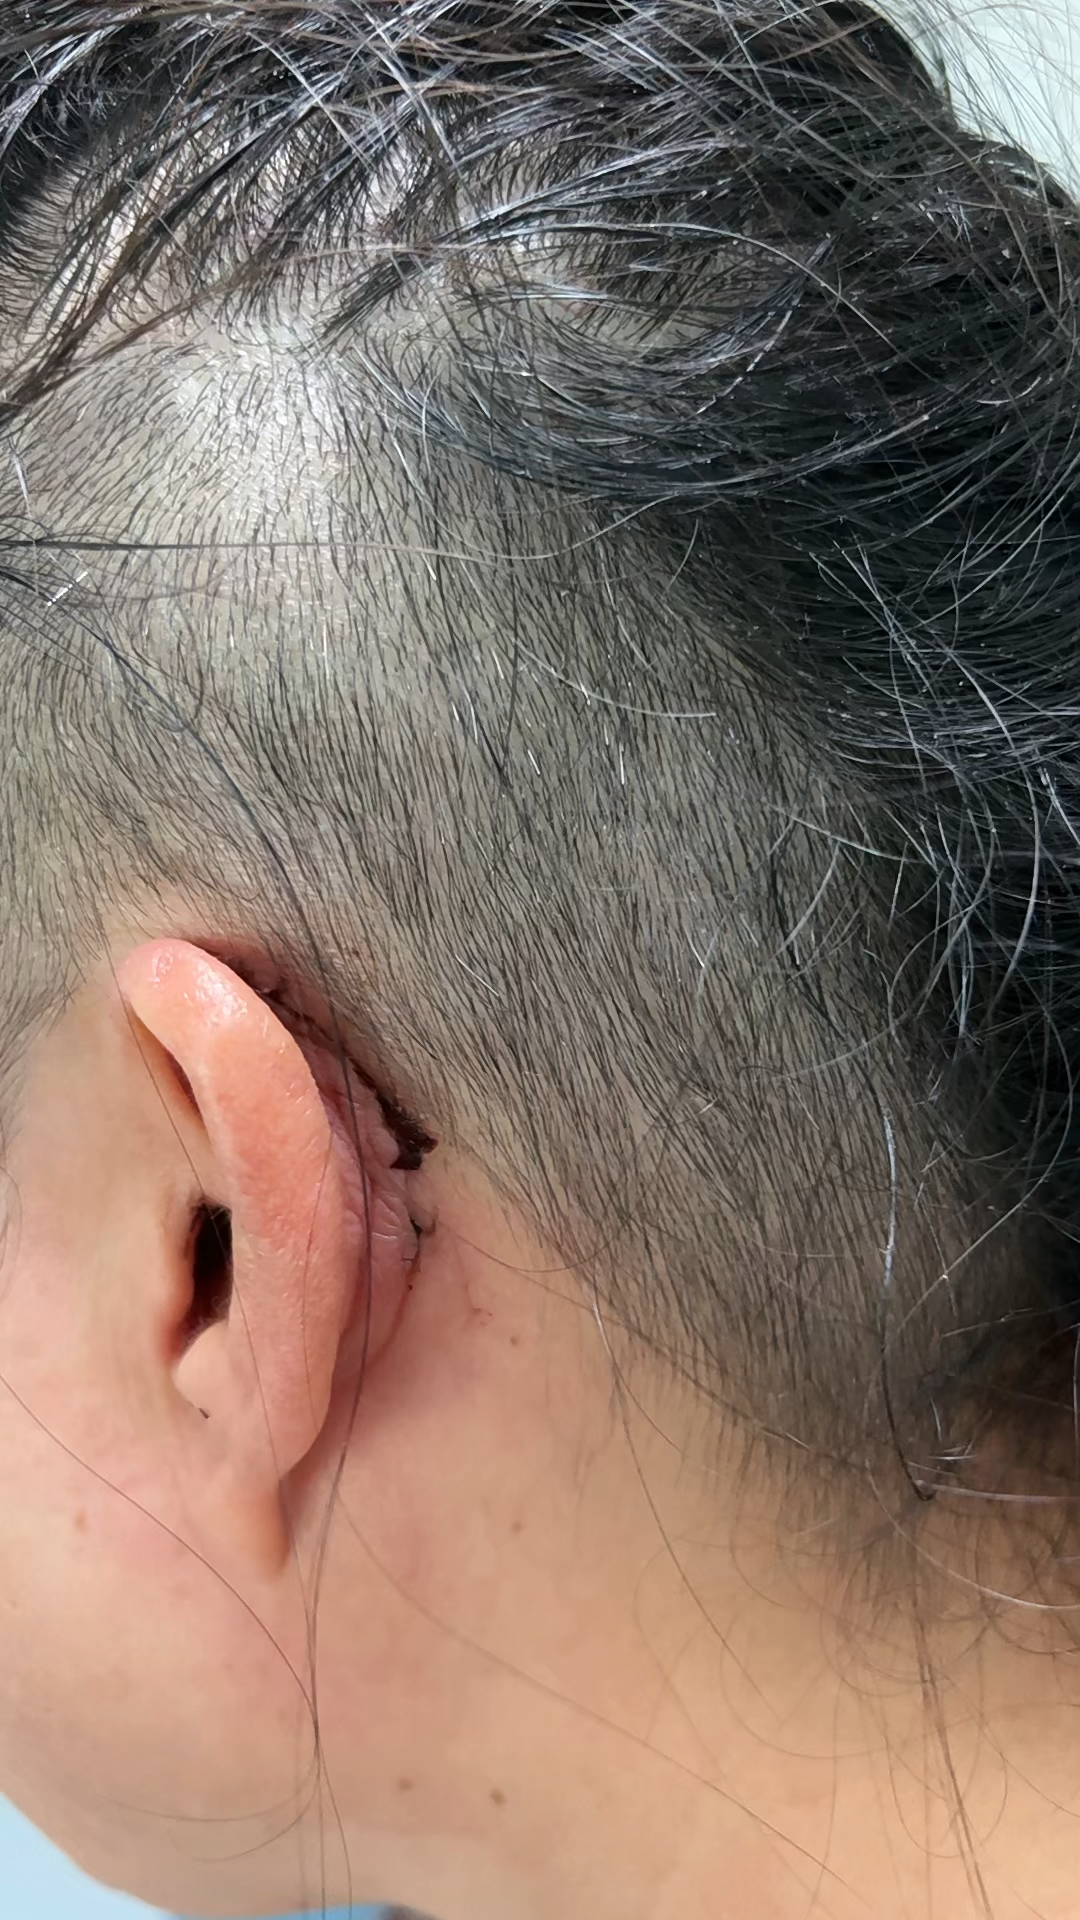 成人人工耳蜗植入术后2周复查